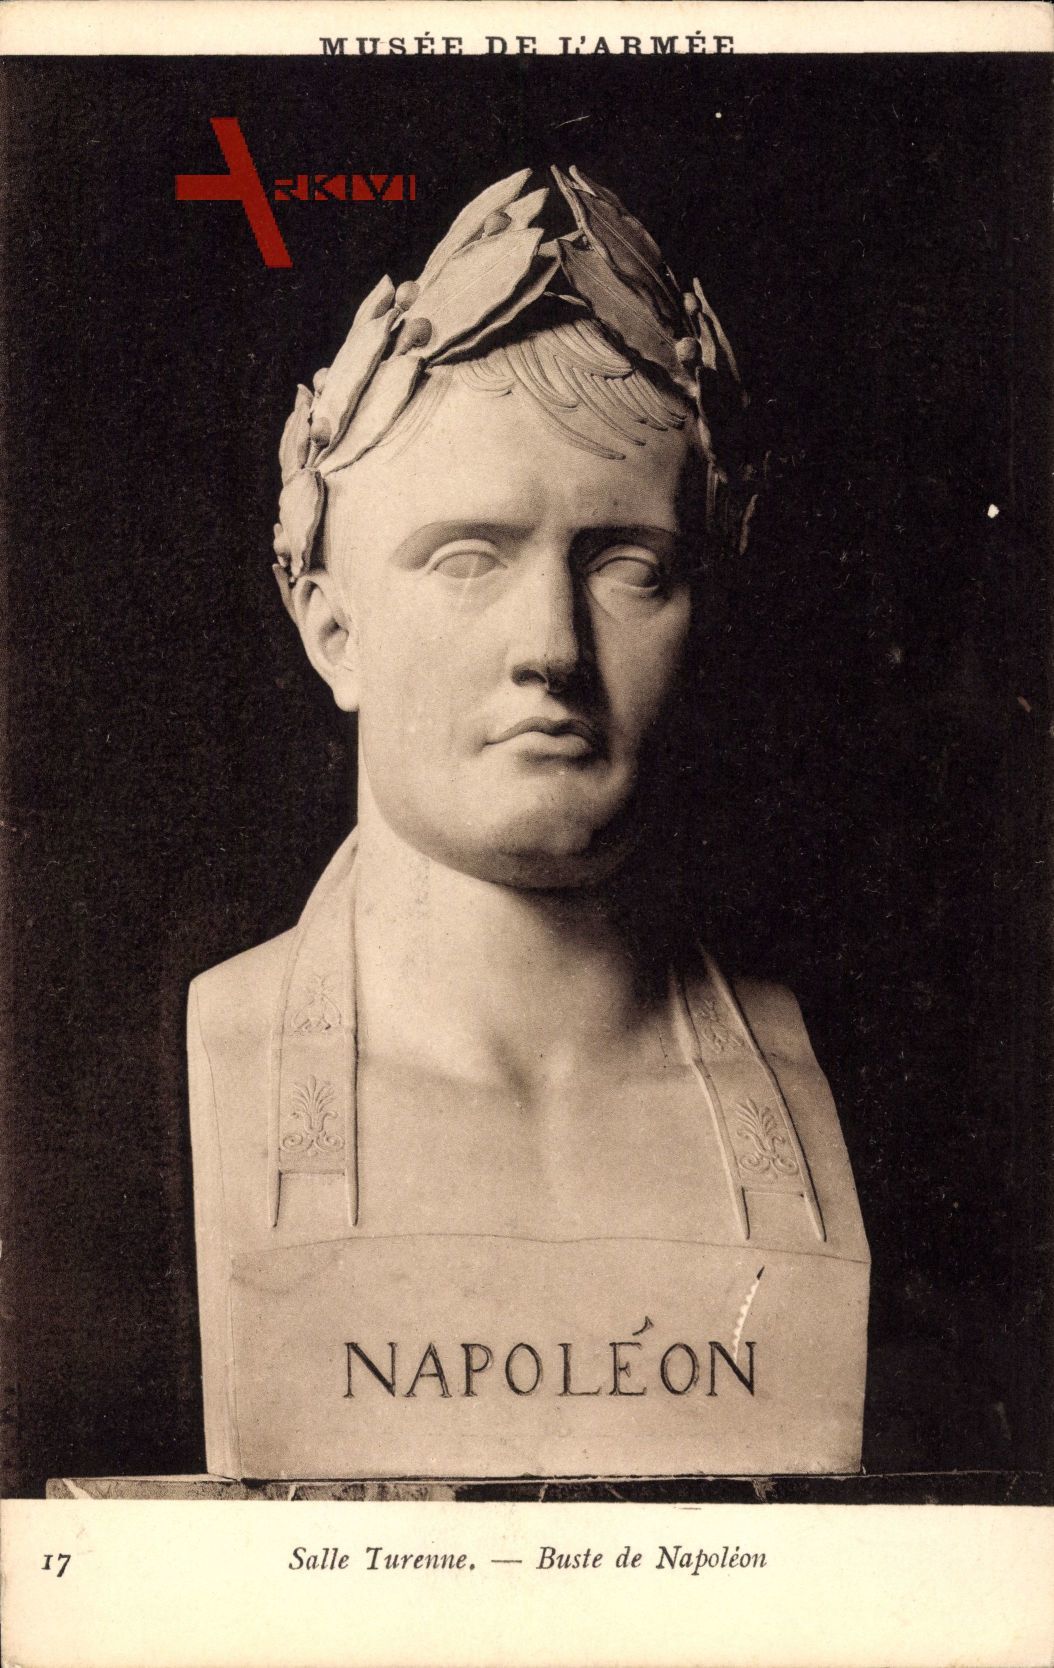 Buste de Napoleon, Lorbeerkranz, Salle Turenne, Musee de l'Armee